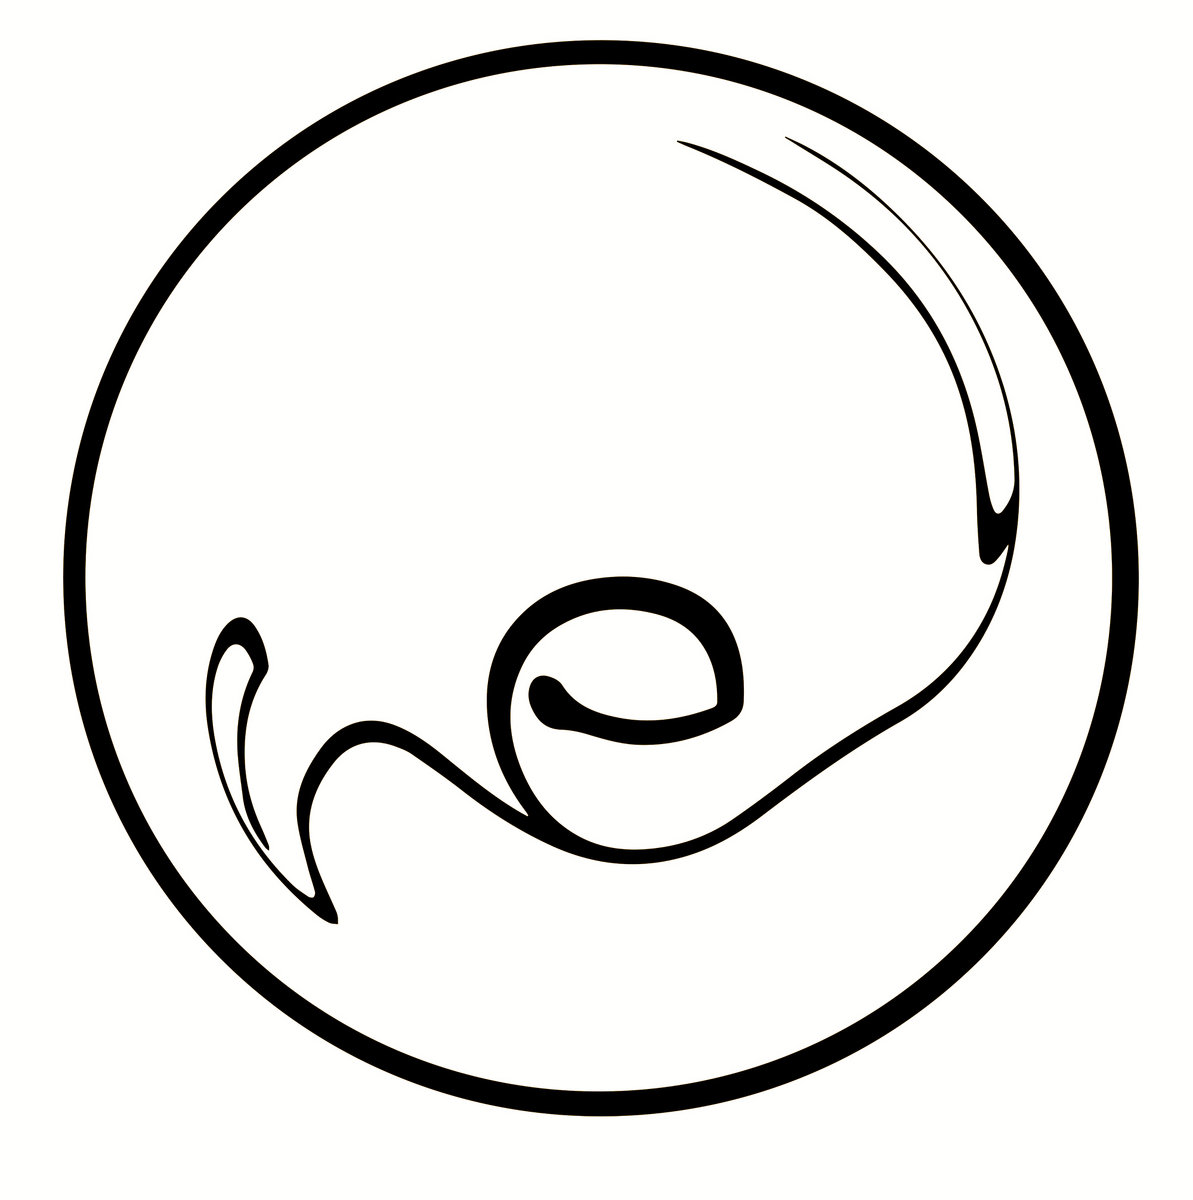 eel logo